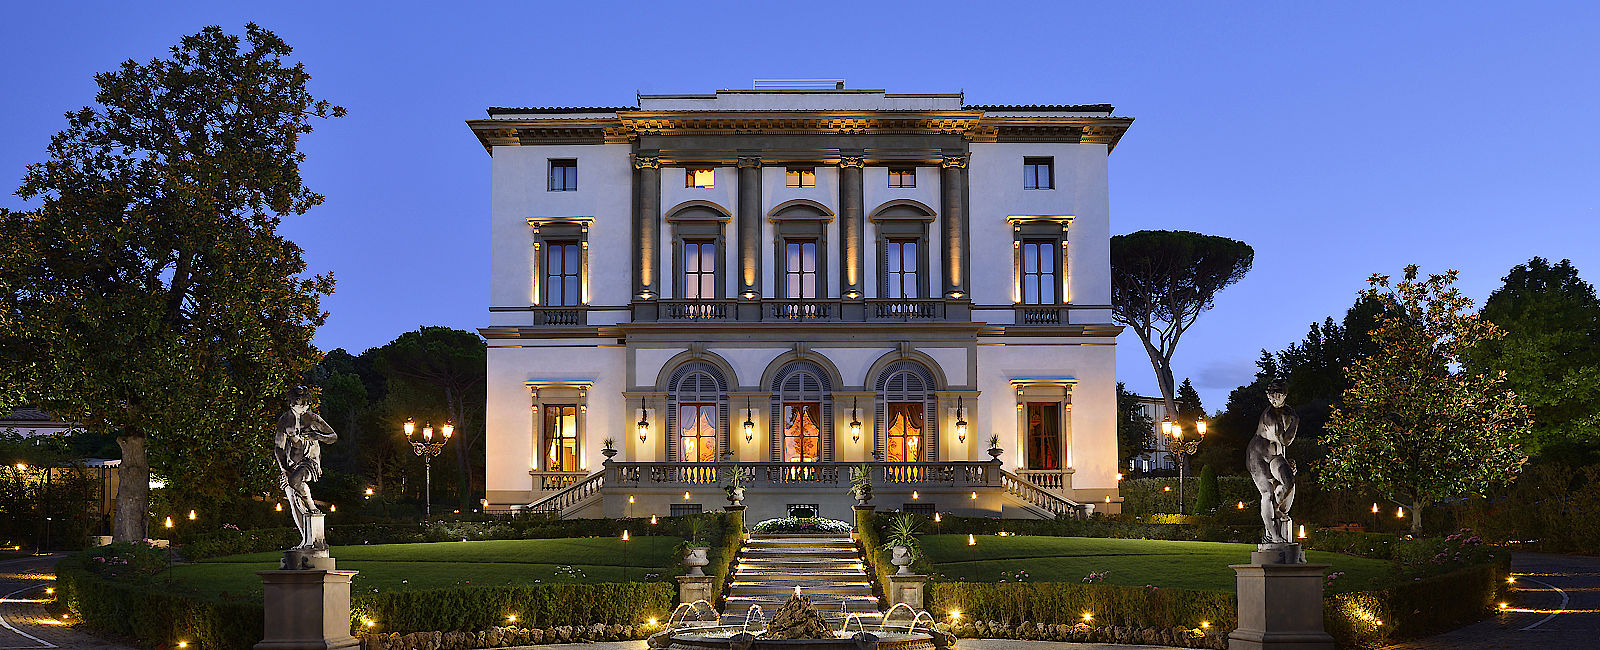 HOTEL TIPPS
 Villa Cora 
 Luxus Villa mit zeitgenössischen Details 